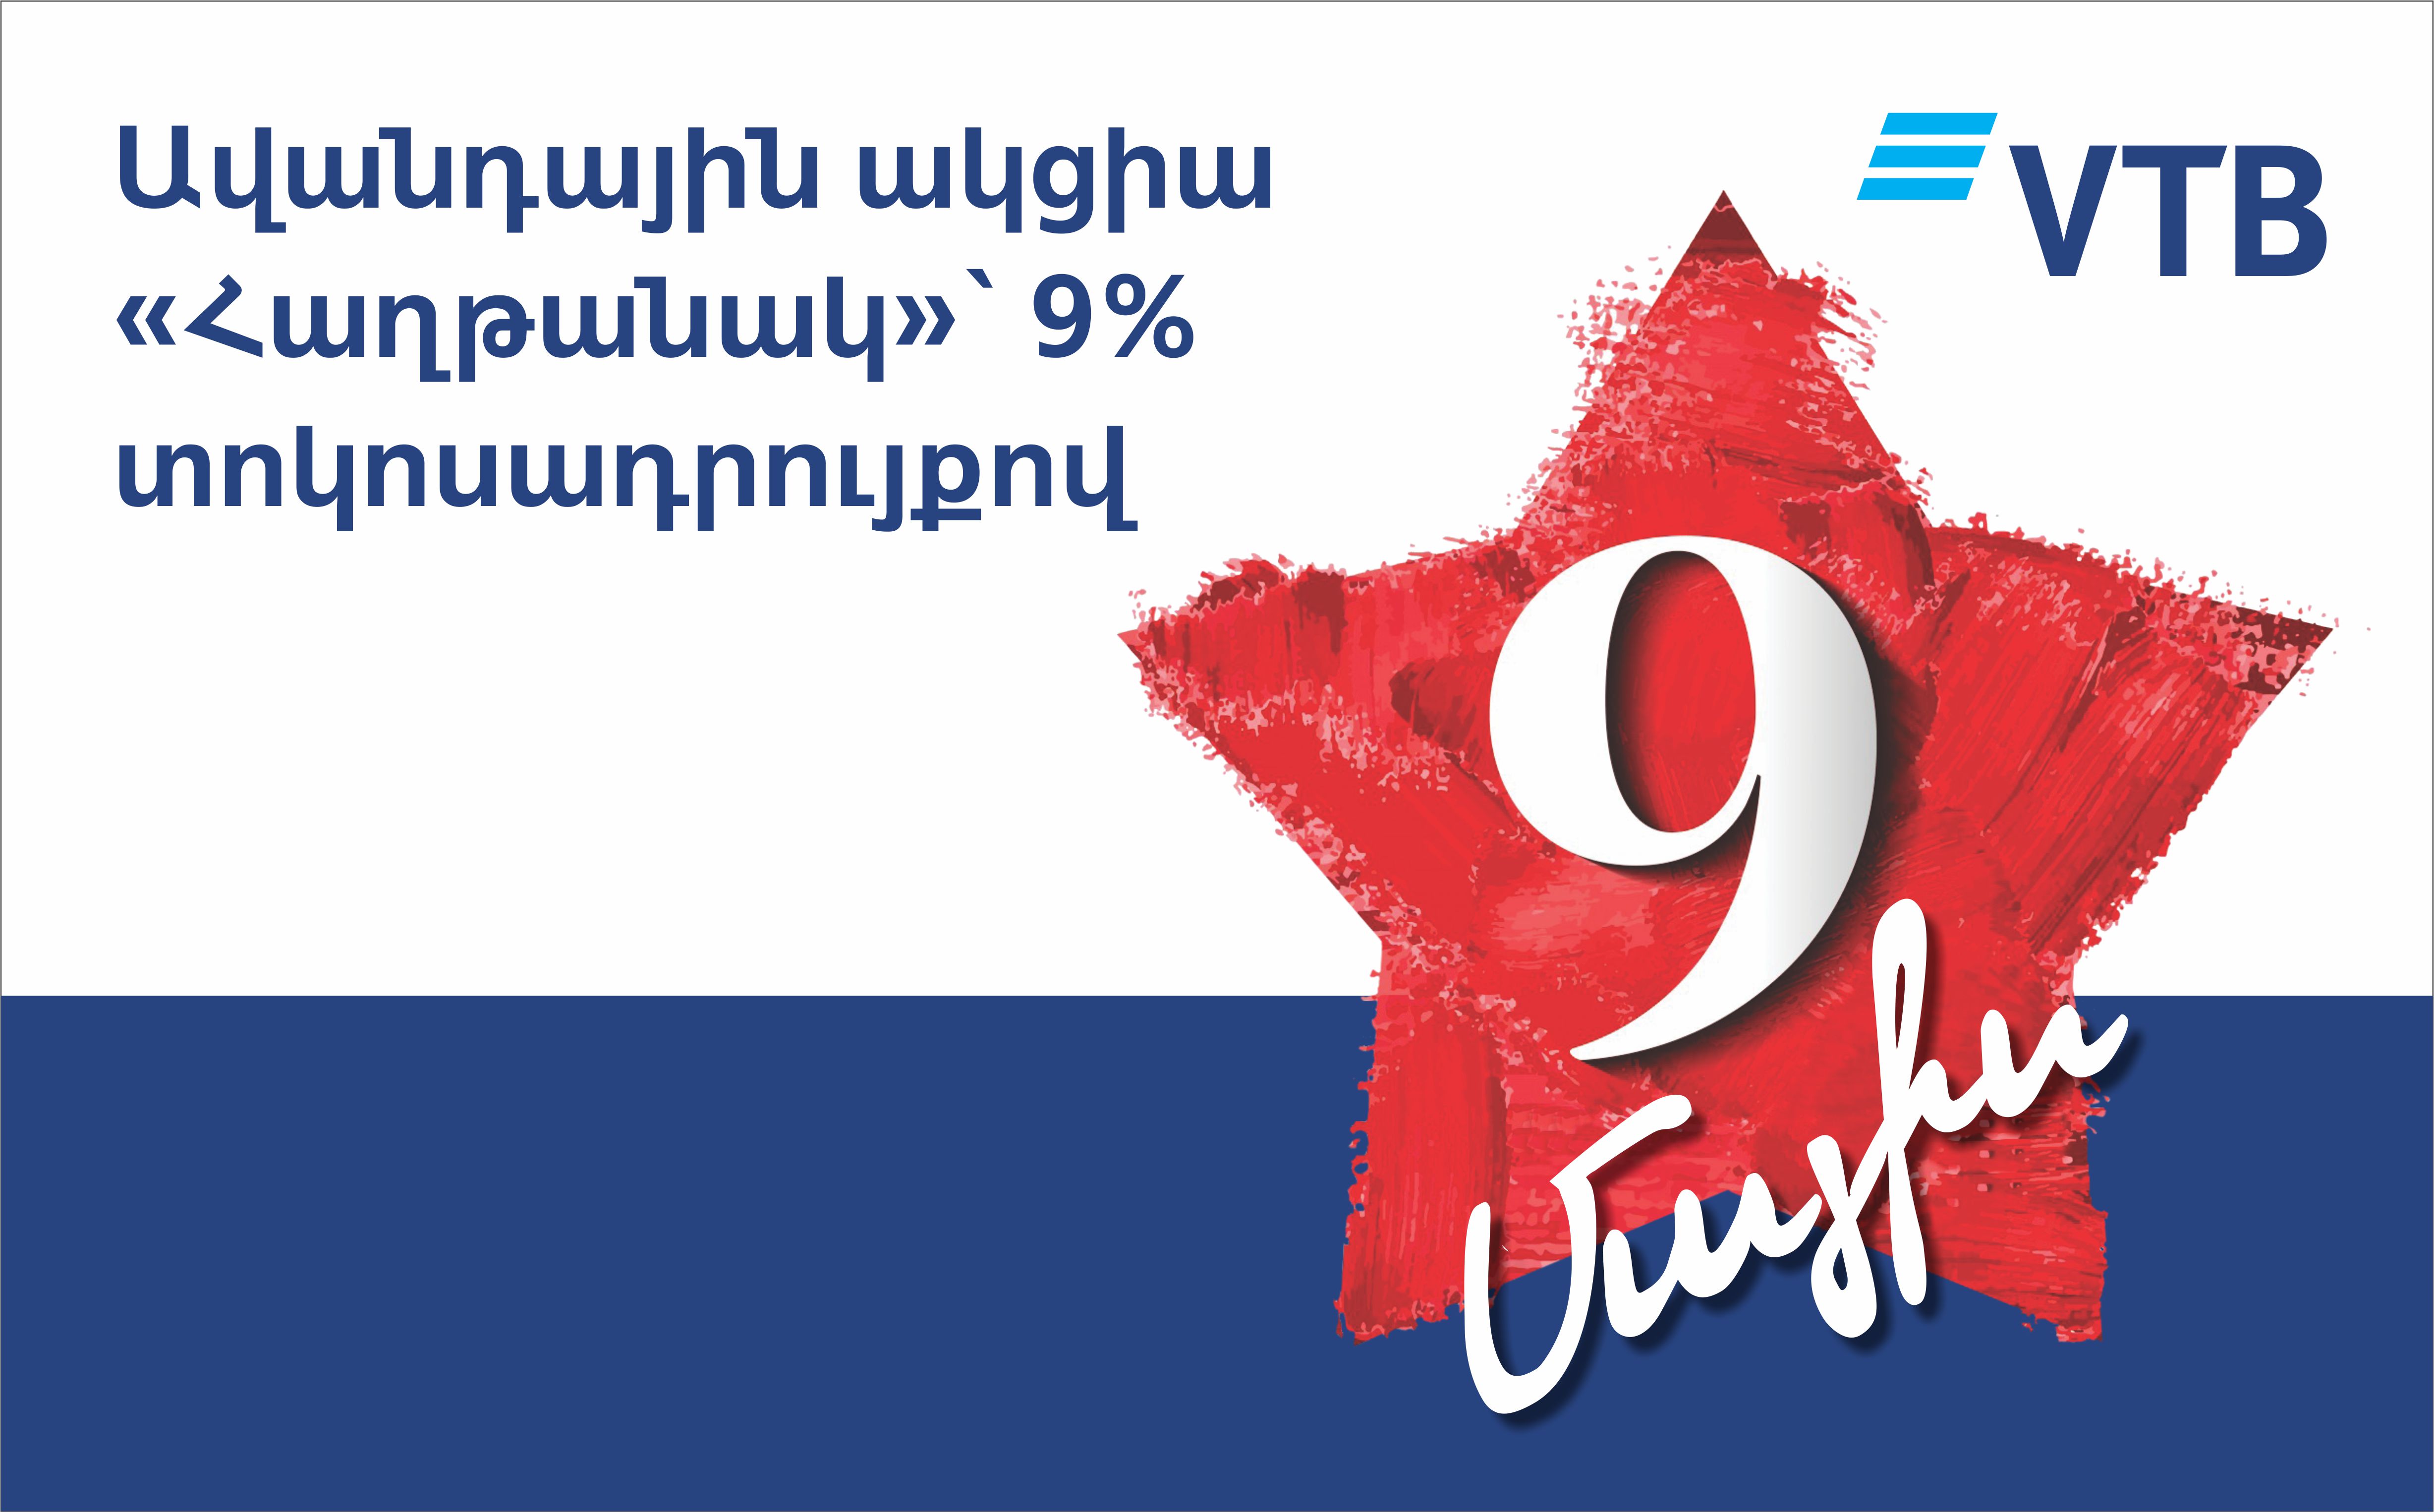 Банк ВТБ (Армения) по традиции по случаю майских праздников запускает по вкладам акцию “Победа”